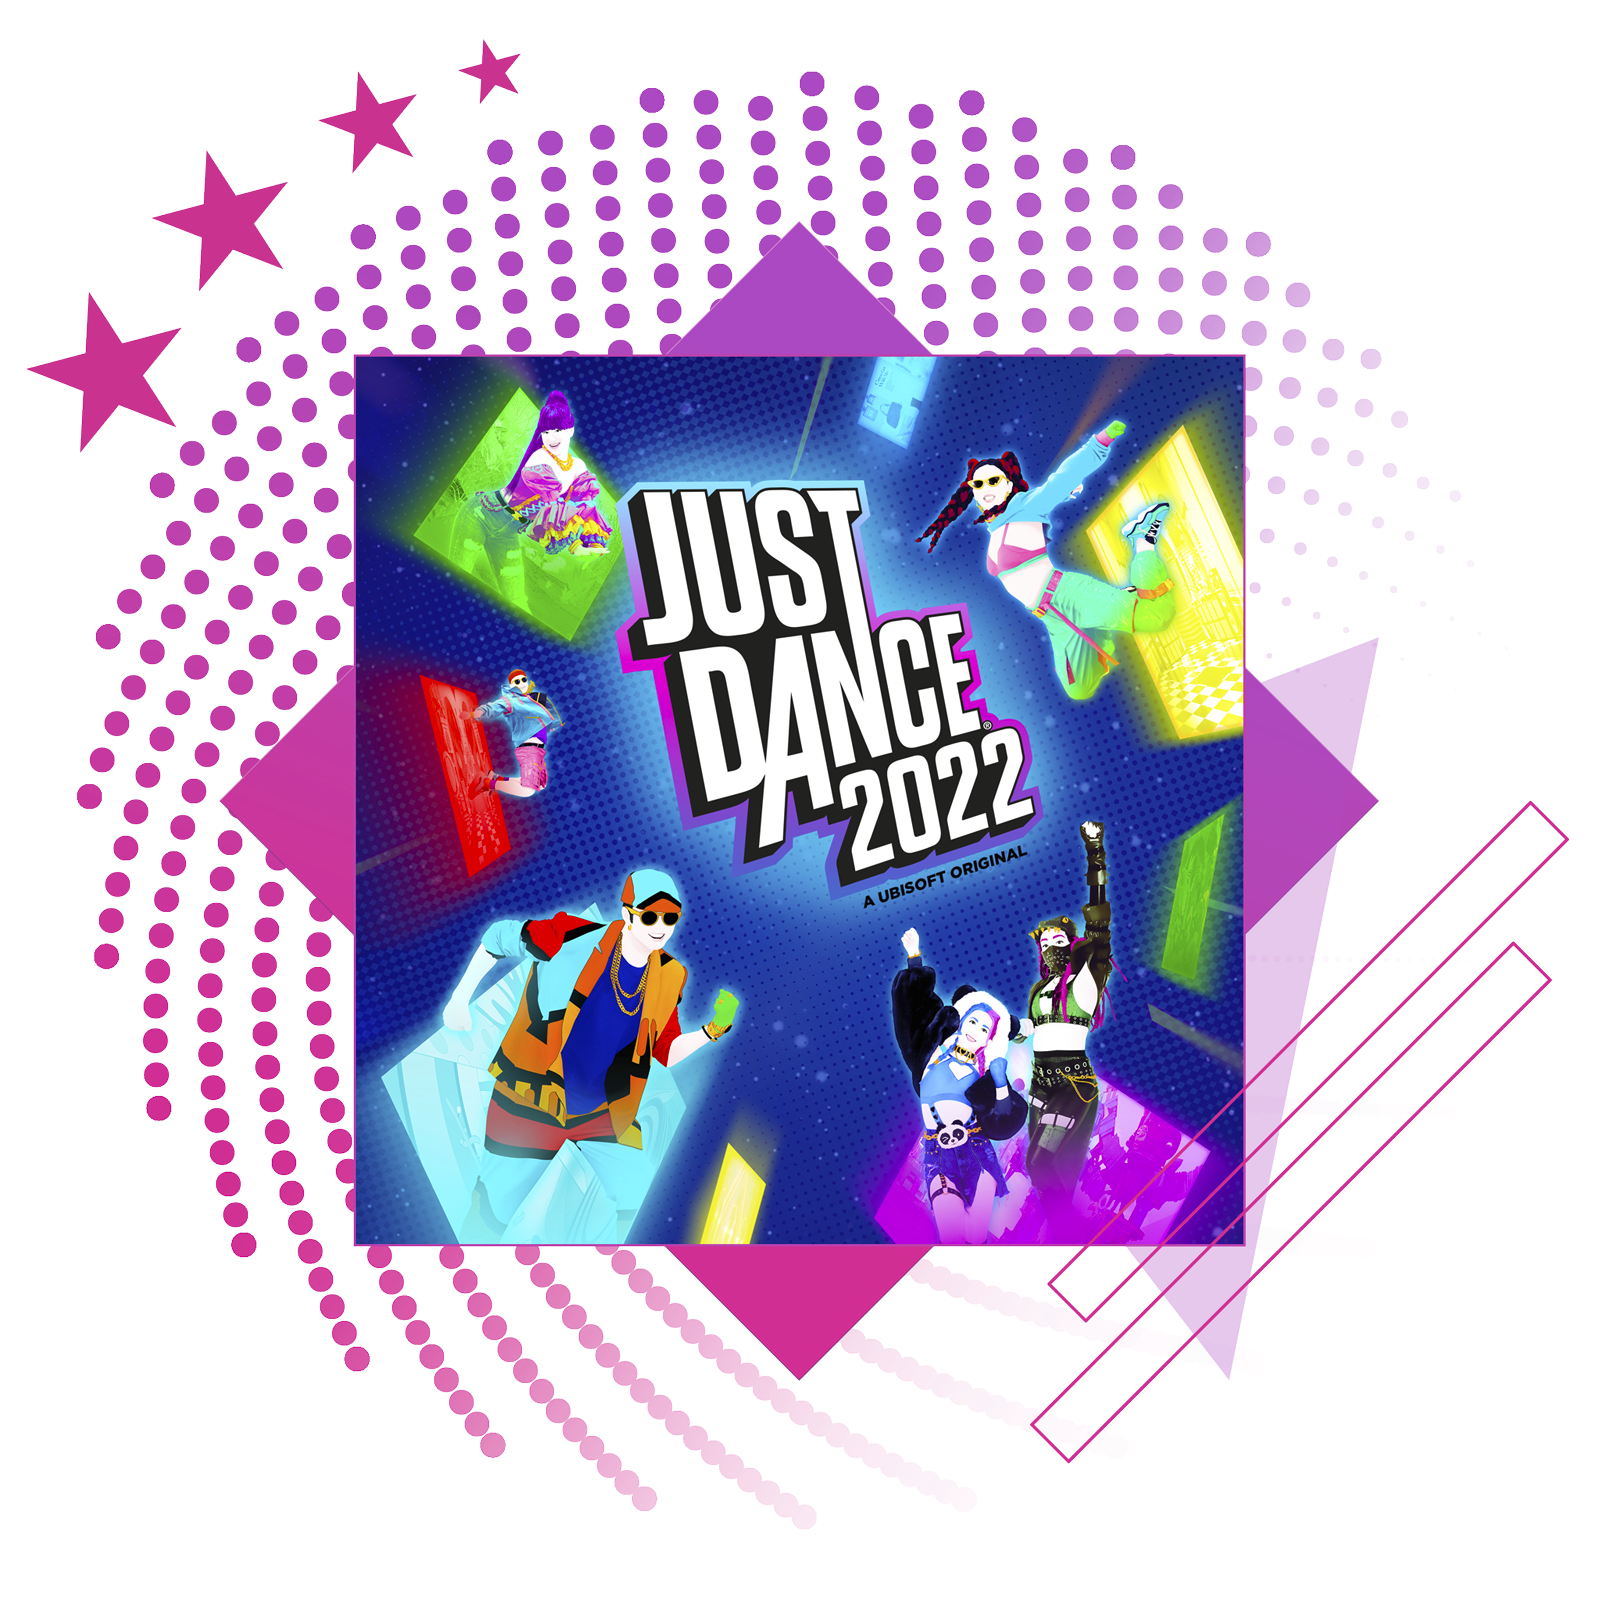 Kép a legjobb ritmusjátékok cikkhez, a Just Dance 2022 fő grafikájával.